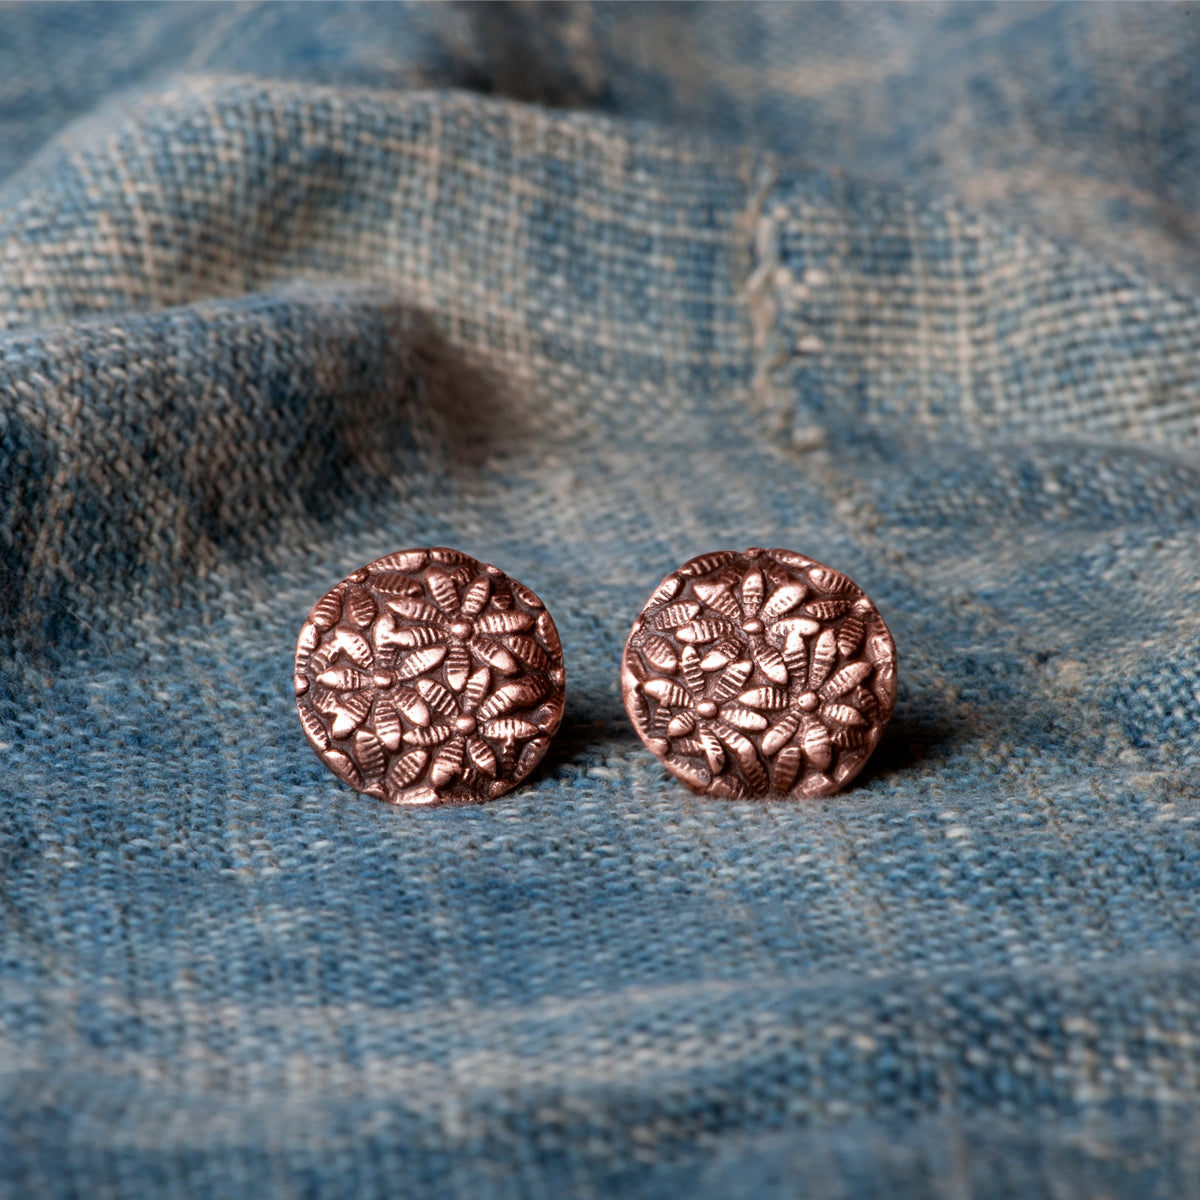 Vintage Copper Flower Button Stud Earrings by Jester Swink - Jester Swink